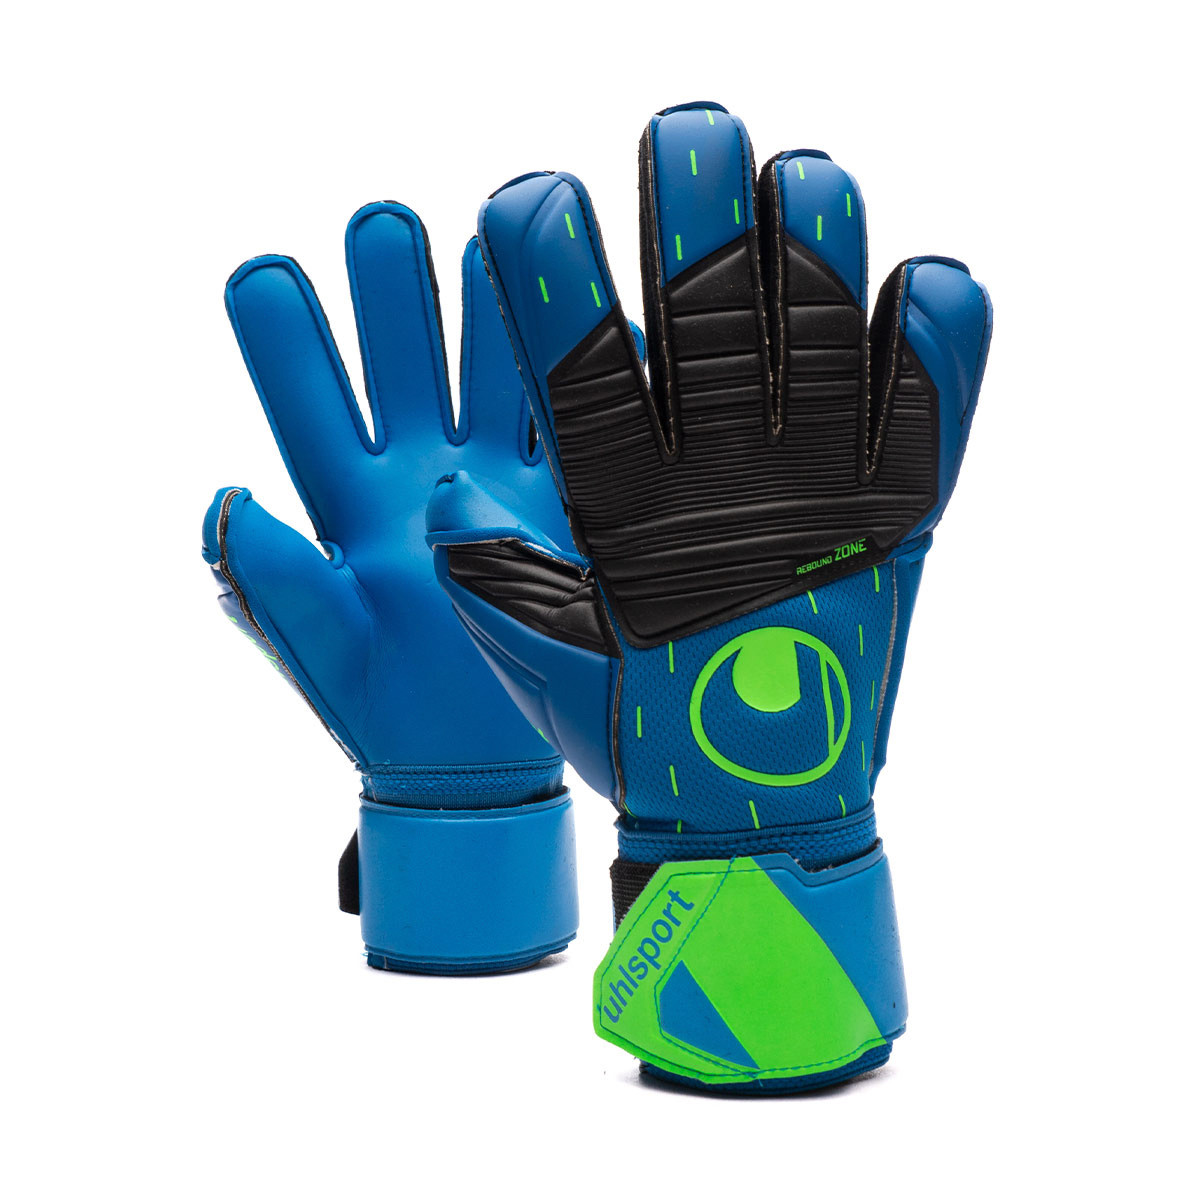 Glove Uhlsport Super Pacific Blue-Black-Fluor Green - Emotion